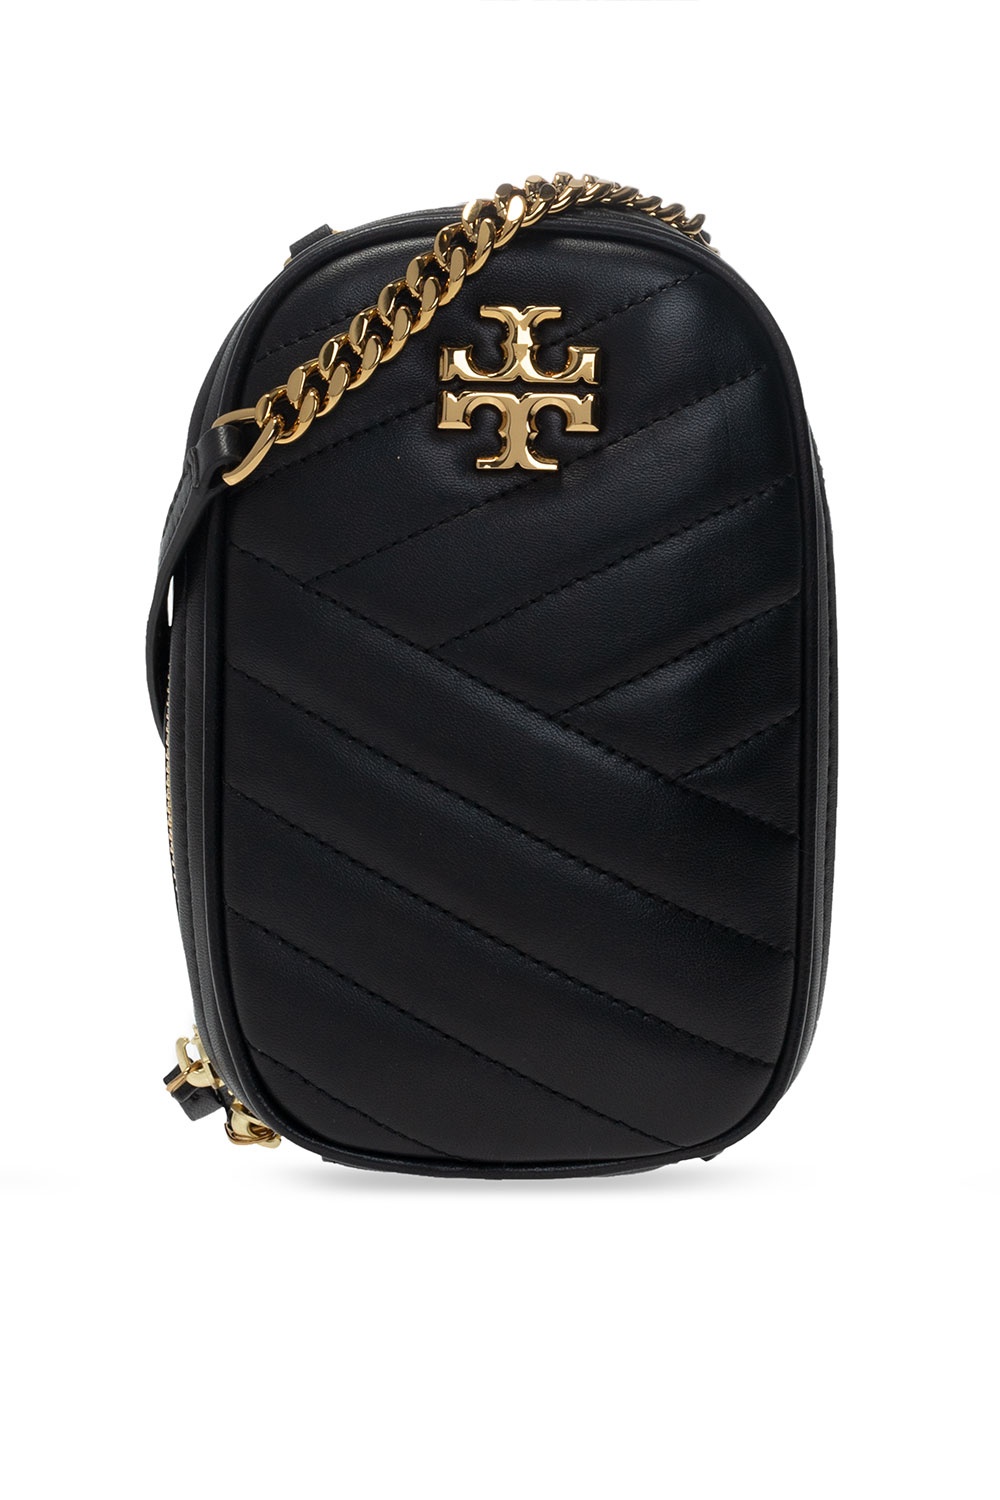 Kira Shoulder bag - Tory Burch - Leather - Black